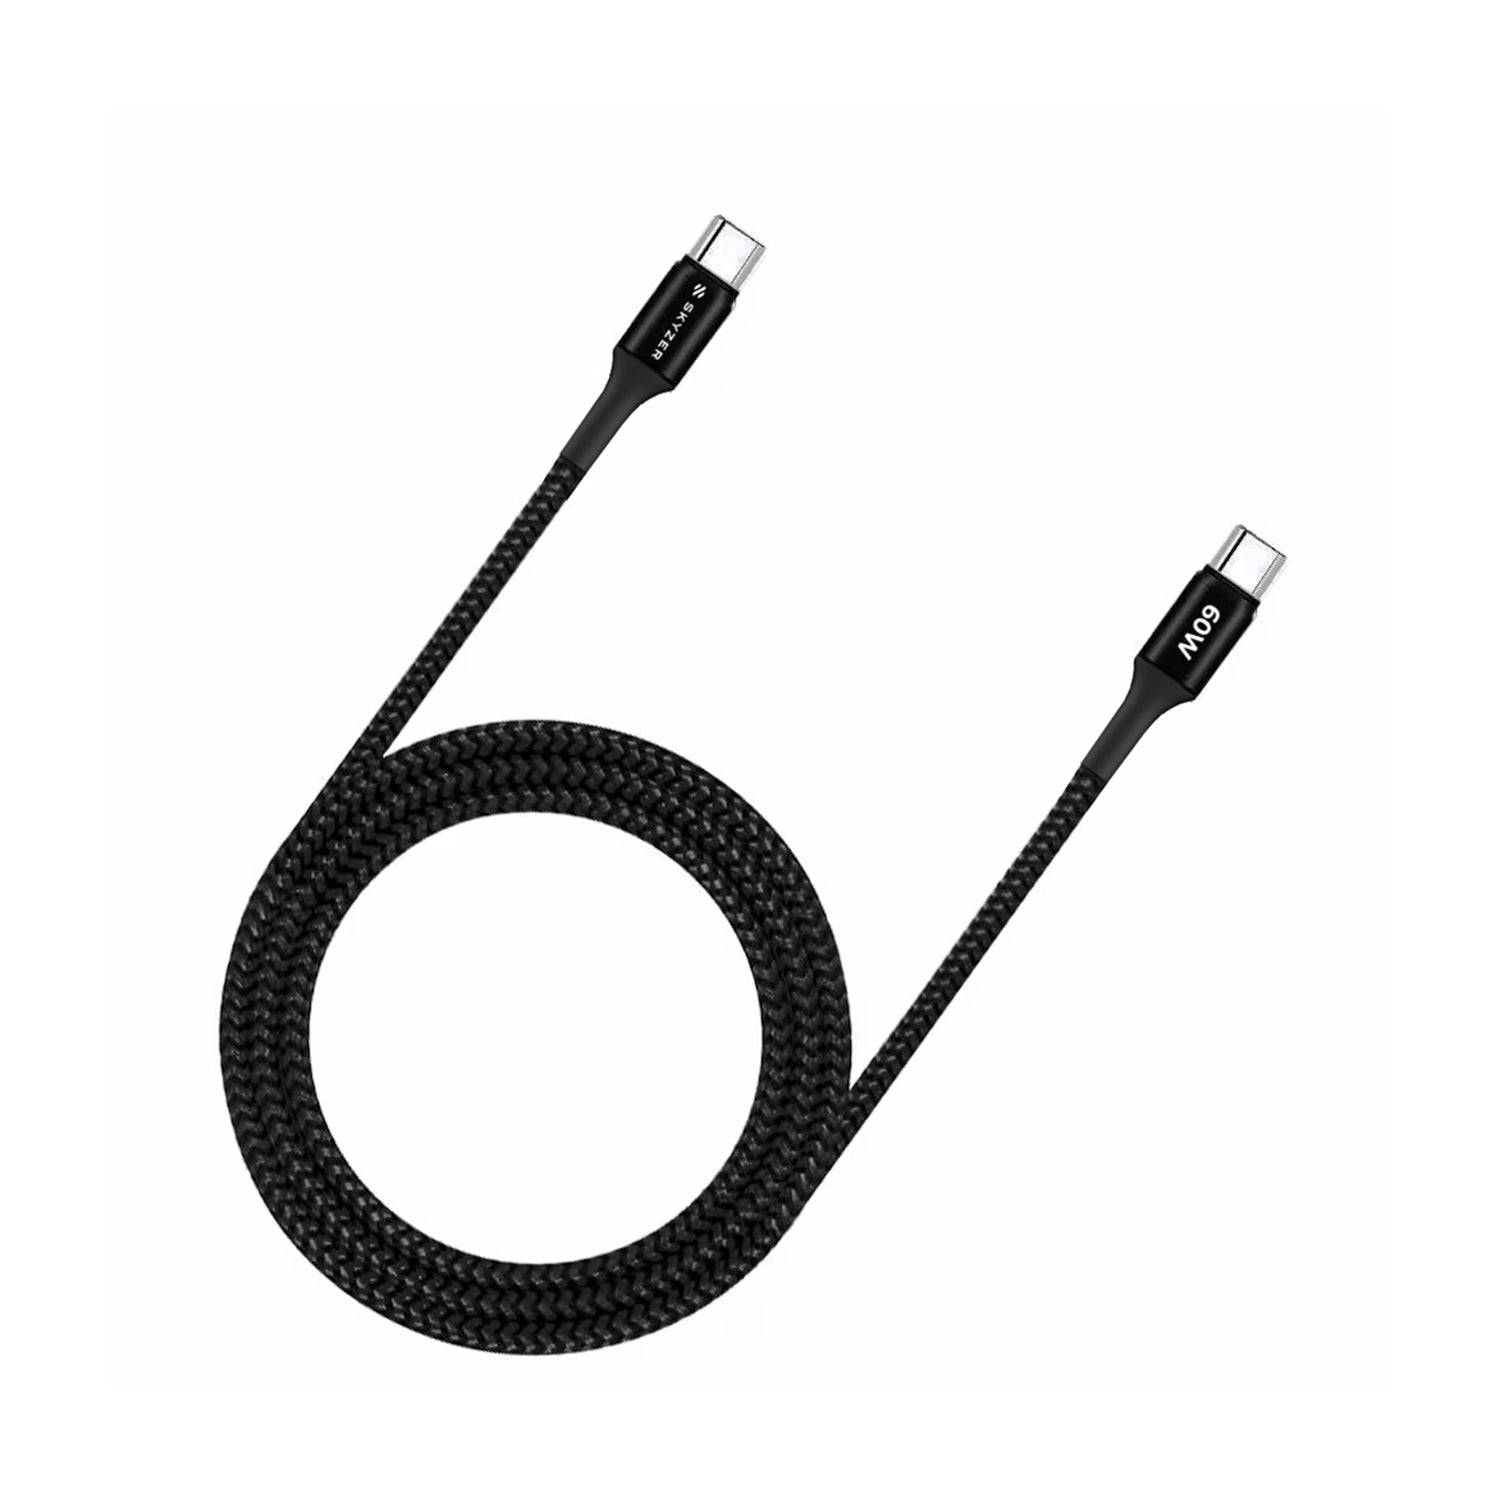 Skyzer 60W Premium USB-C to USB-C Braided Nylon Cable